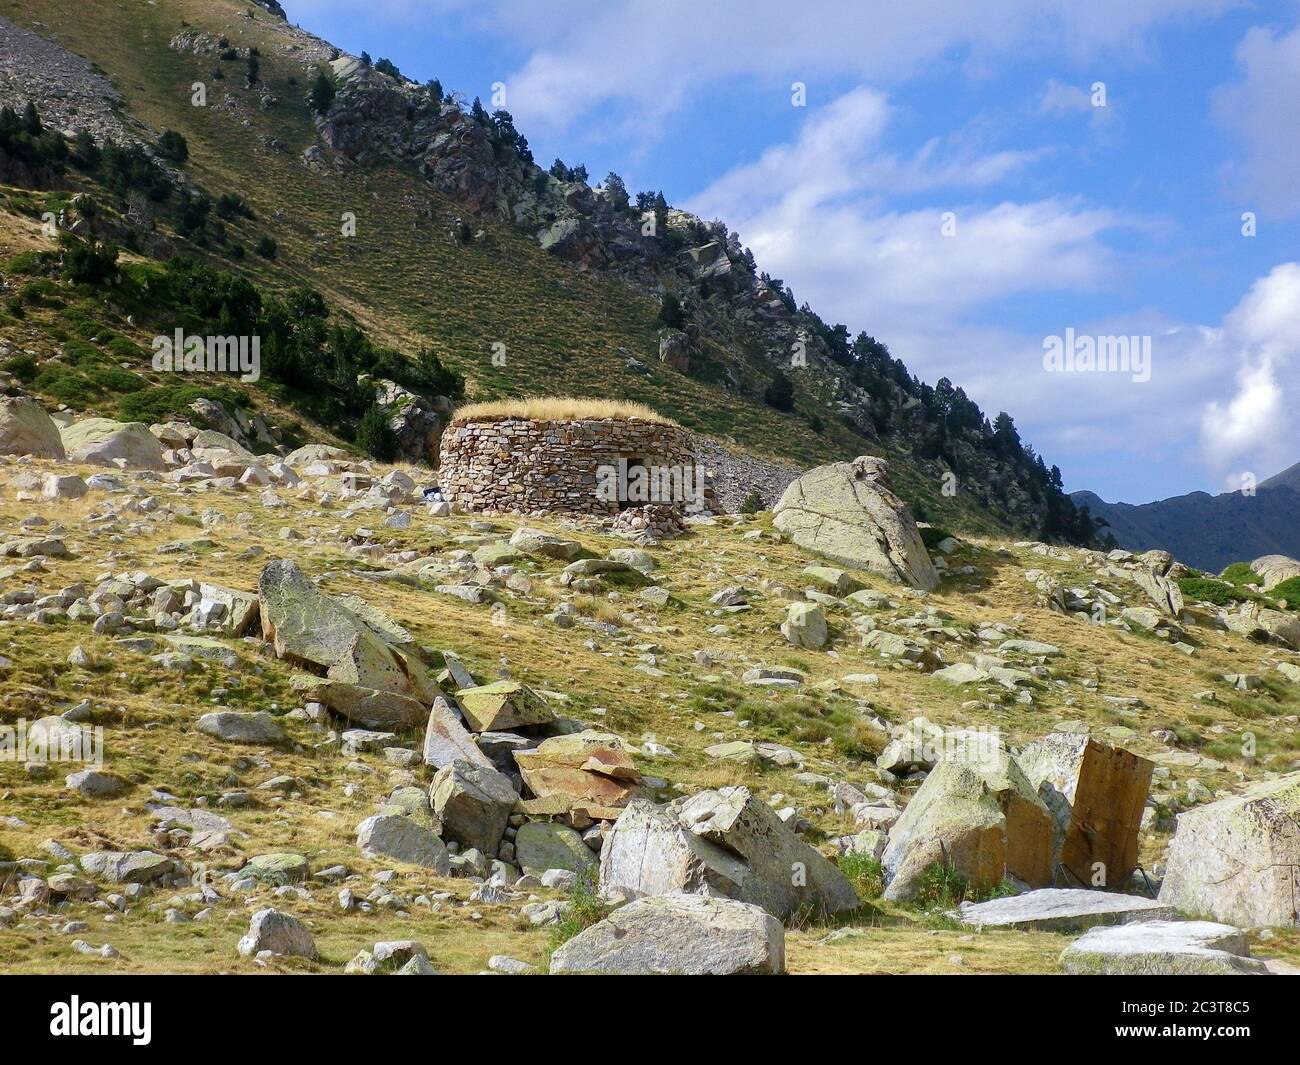 Paisaje de refugio de alta montaña en medio del valle con árboles y piedras a su alrededor Foto de stock